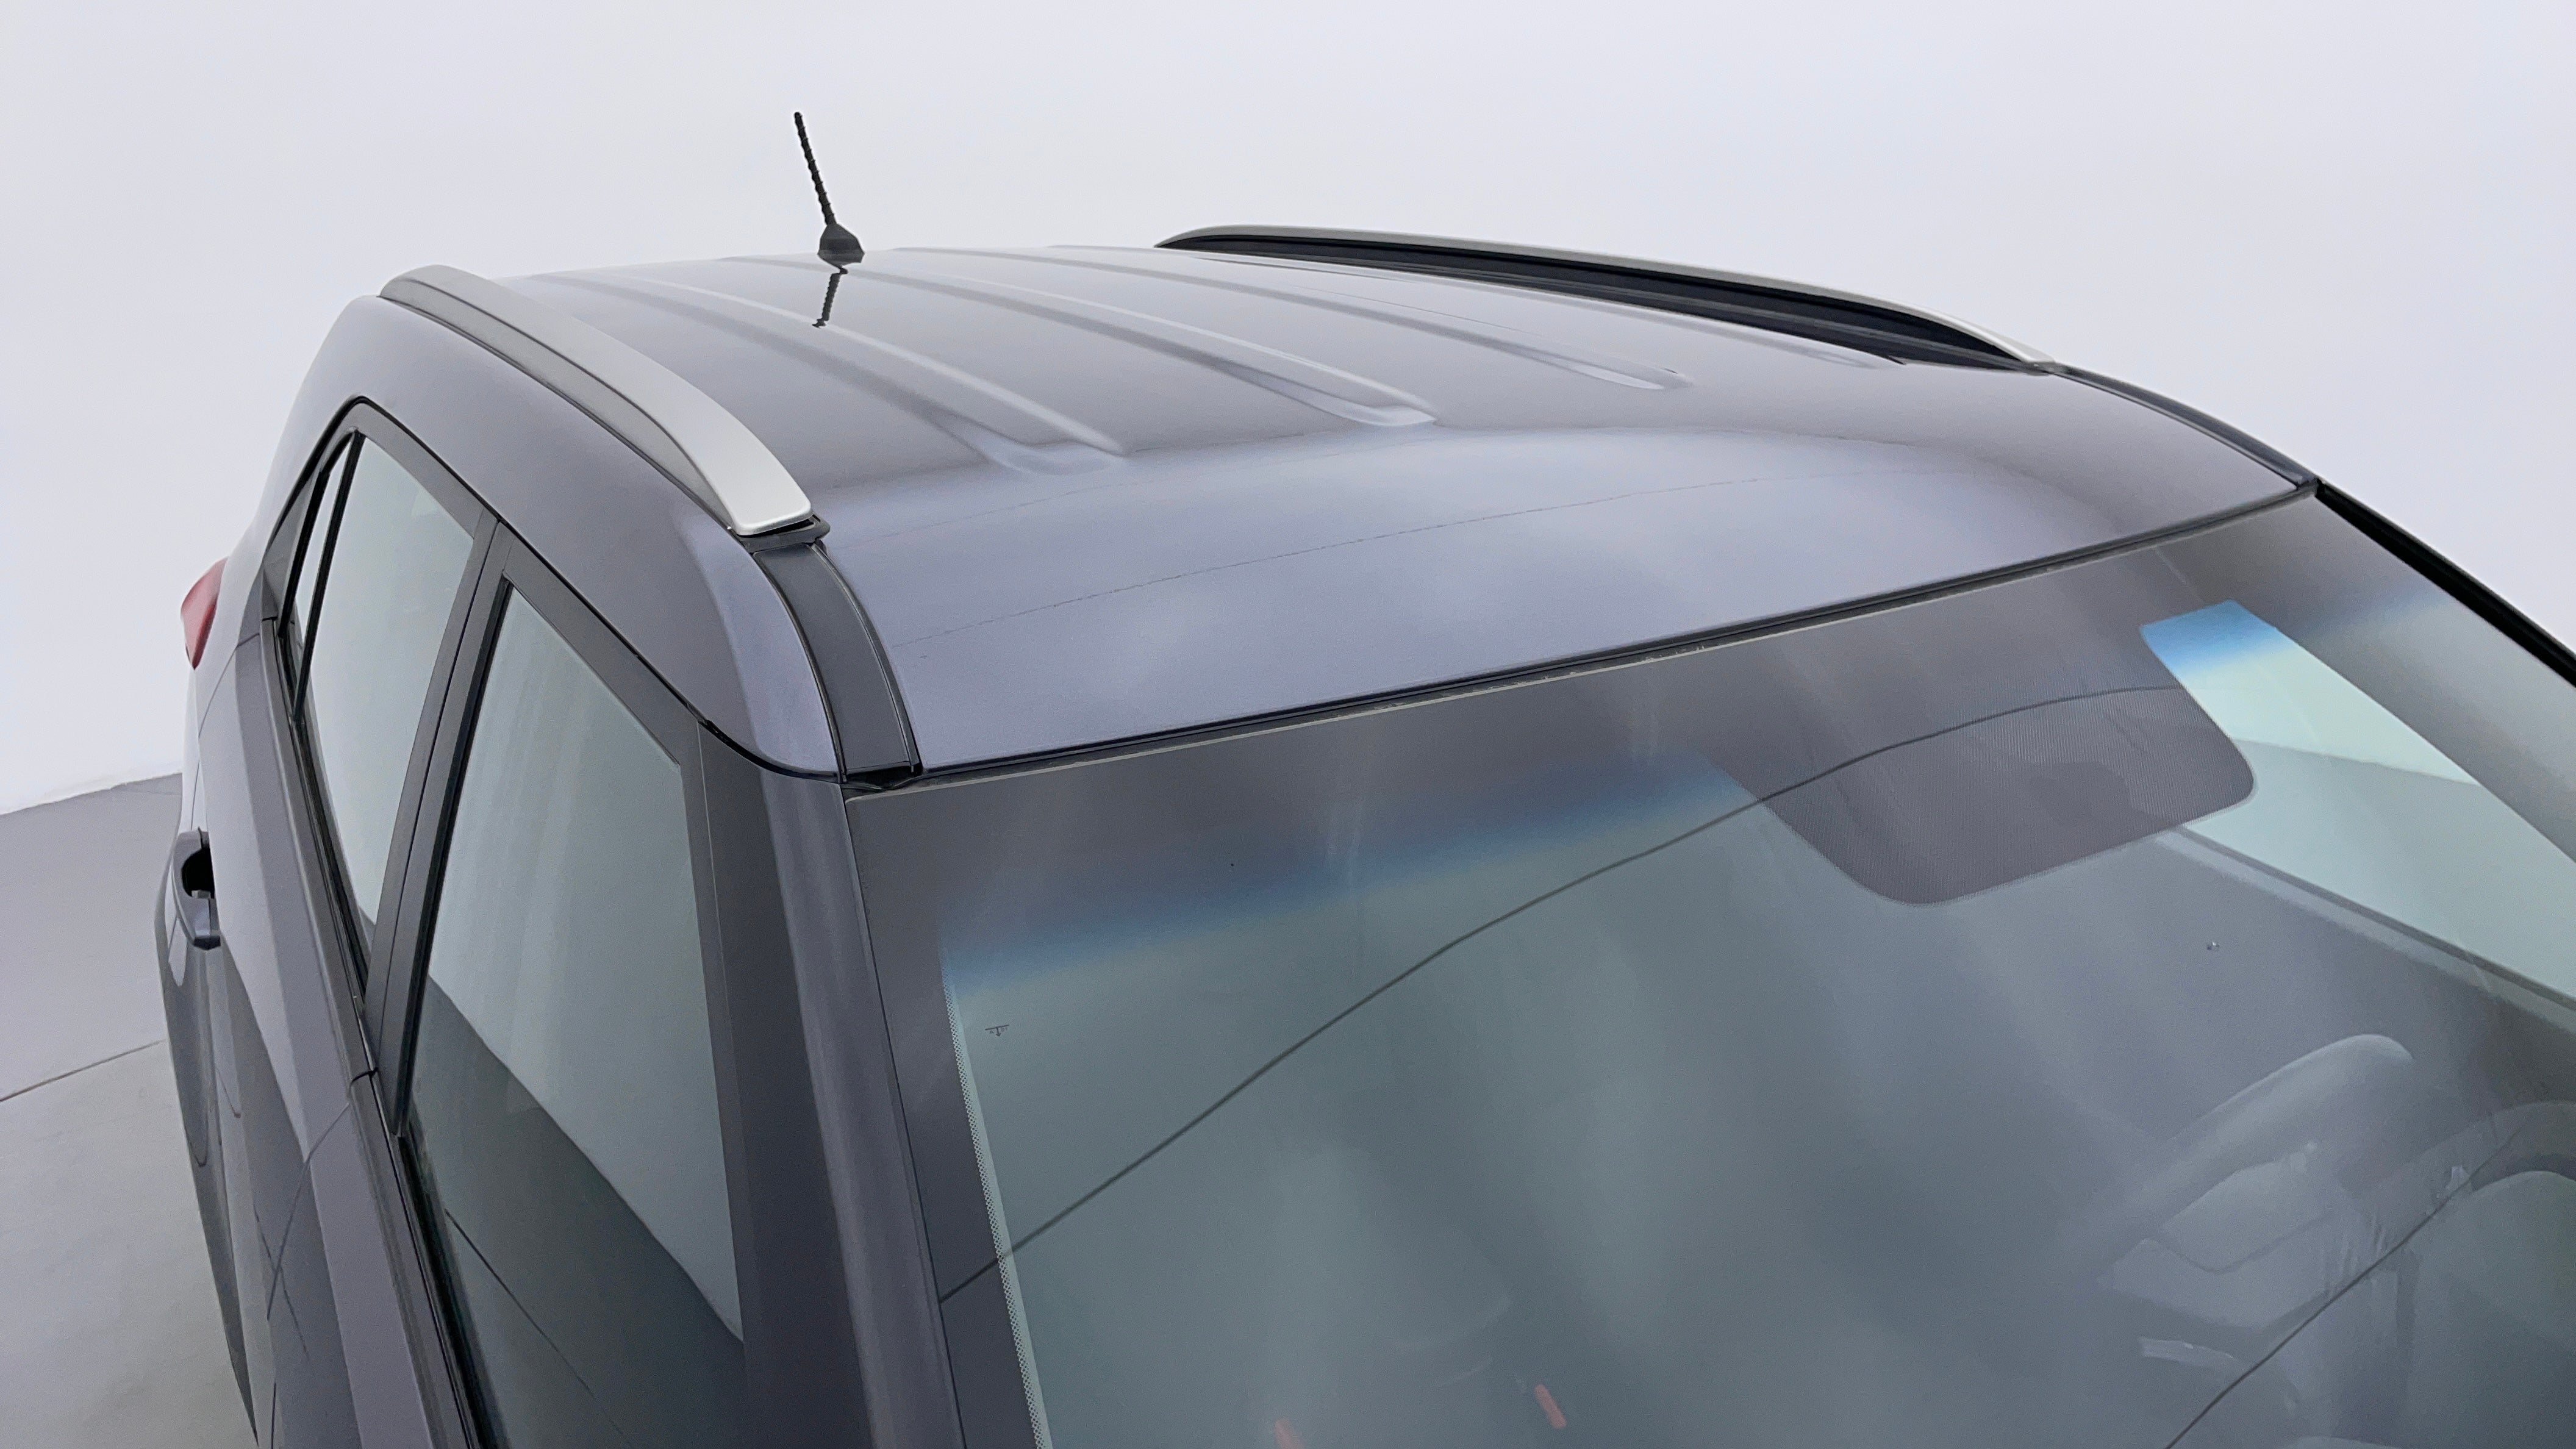 Hyundai Creta-Roof/Sunroof View